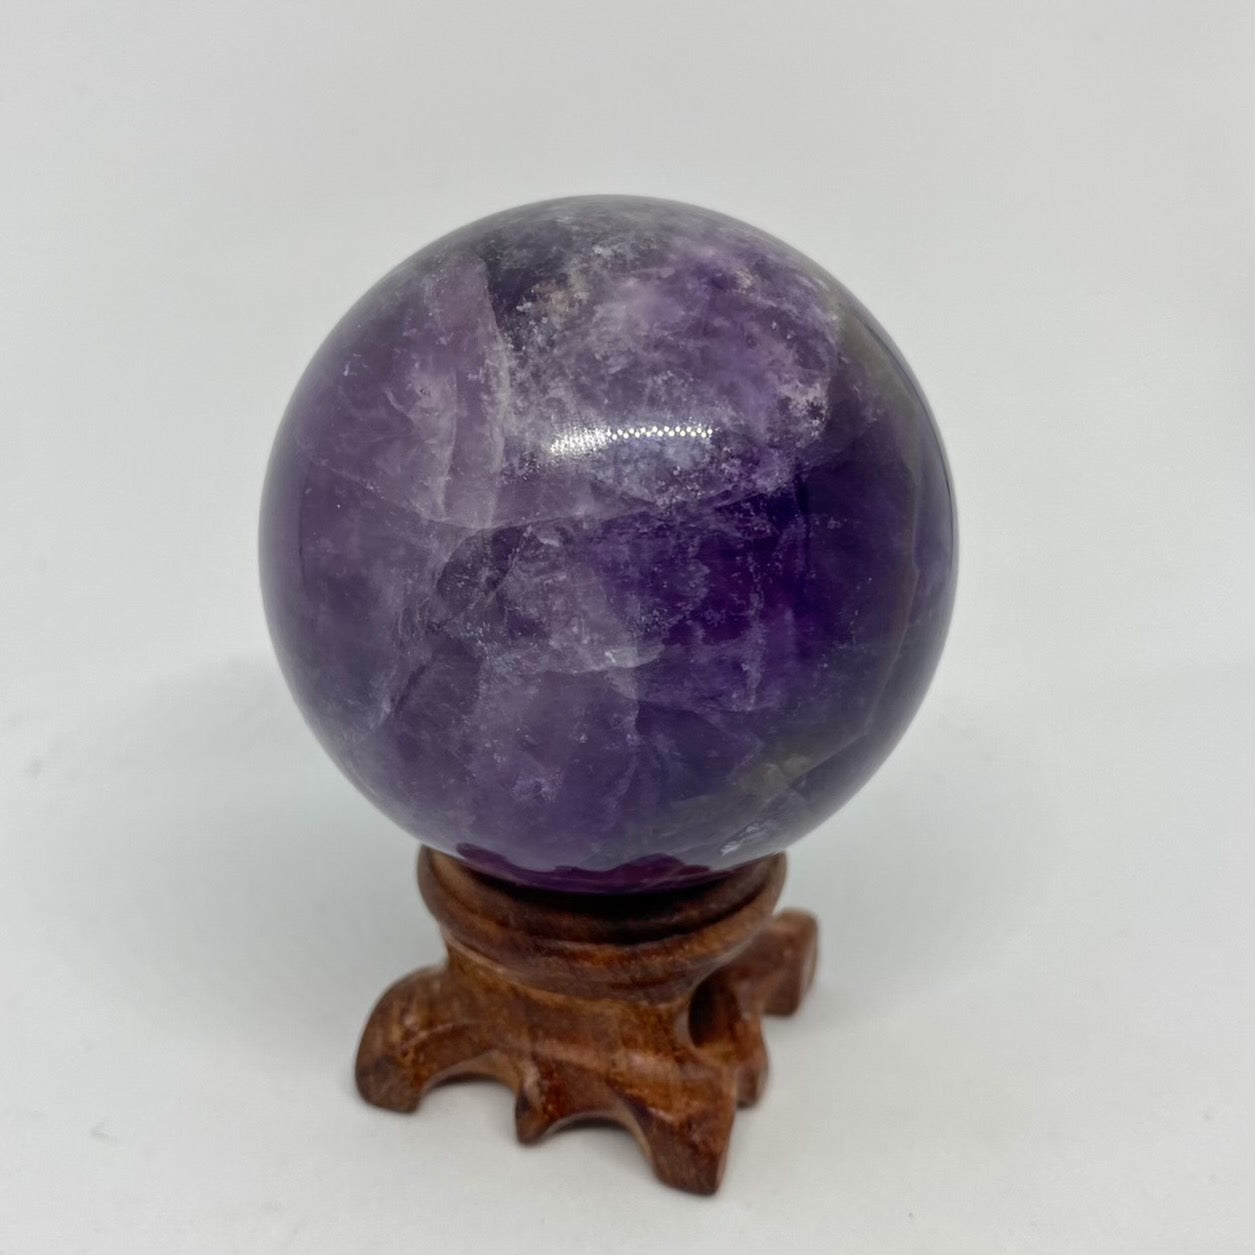 Amethyst Large Healing Crystal Spheres